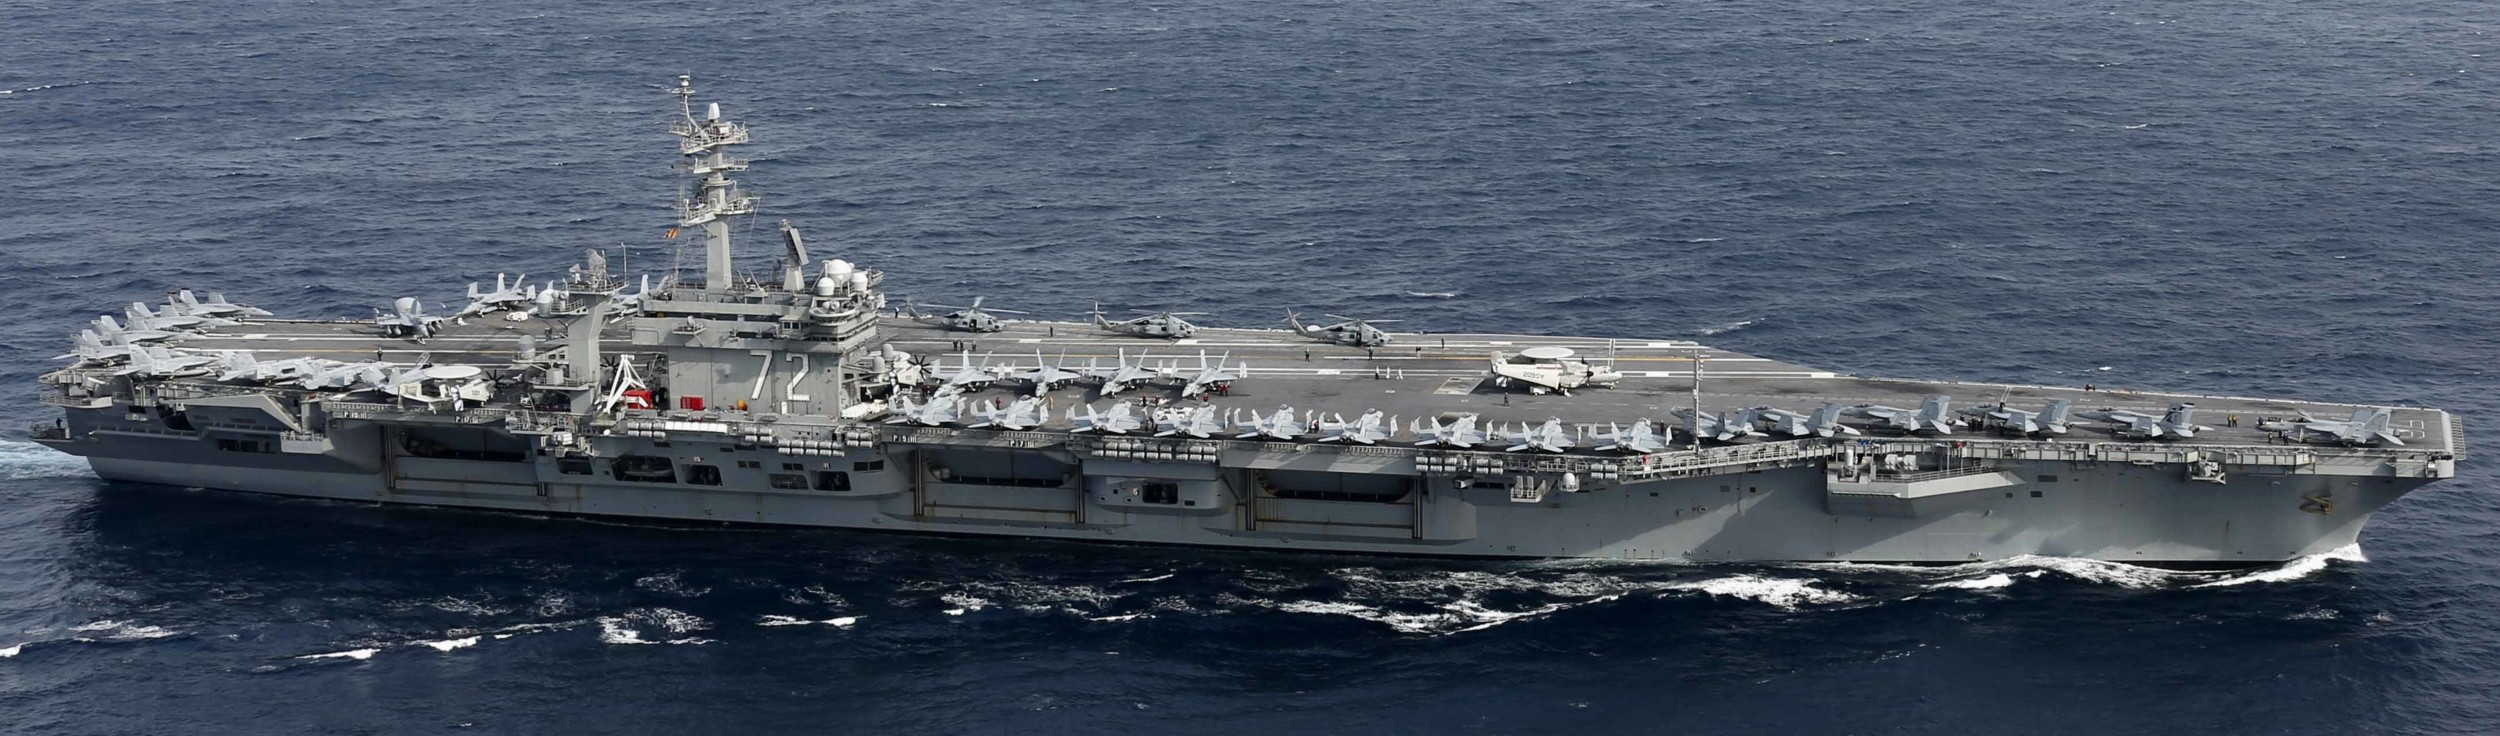 cvn-72 uss abraham lincoln nimitz class aircraft carrier air wing cvw-7 us navy 65